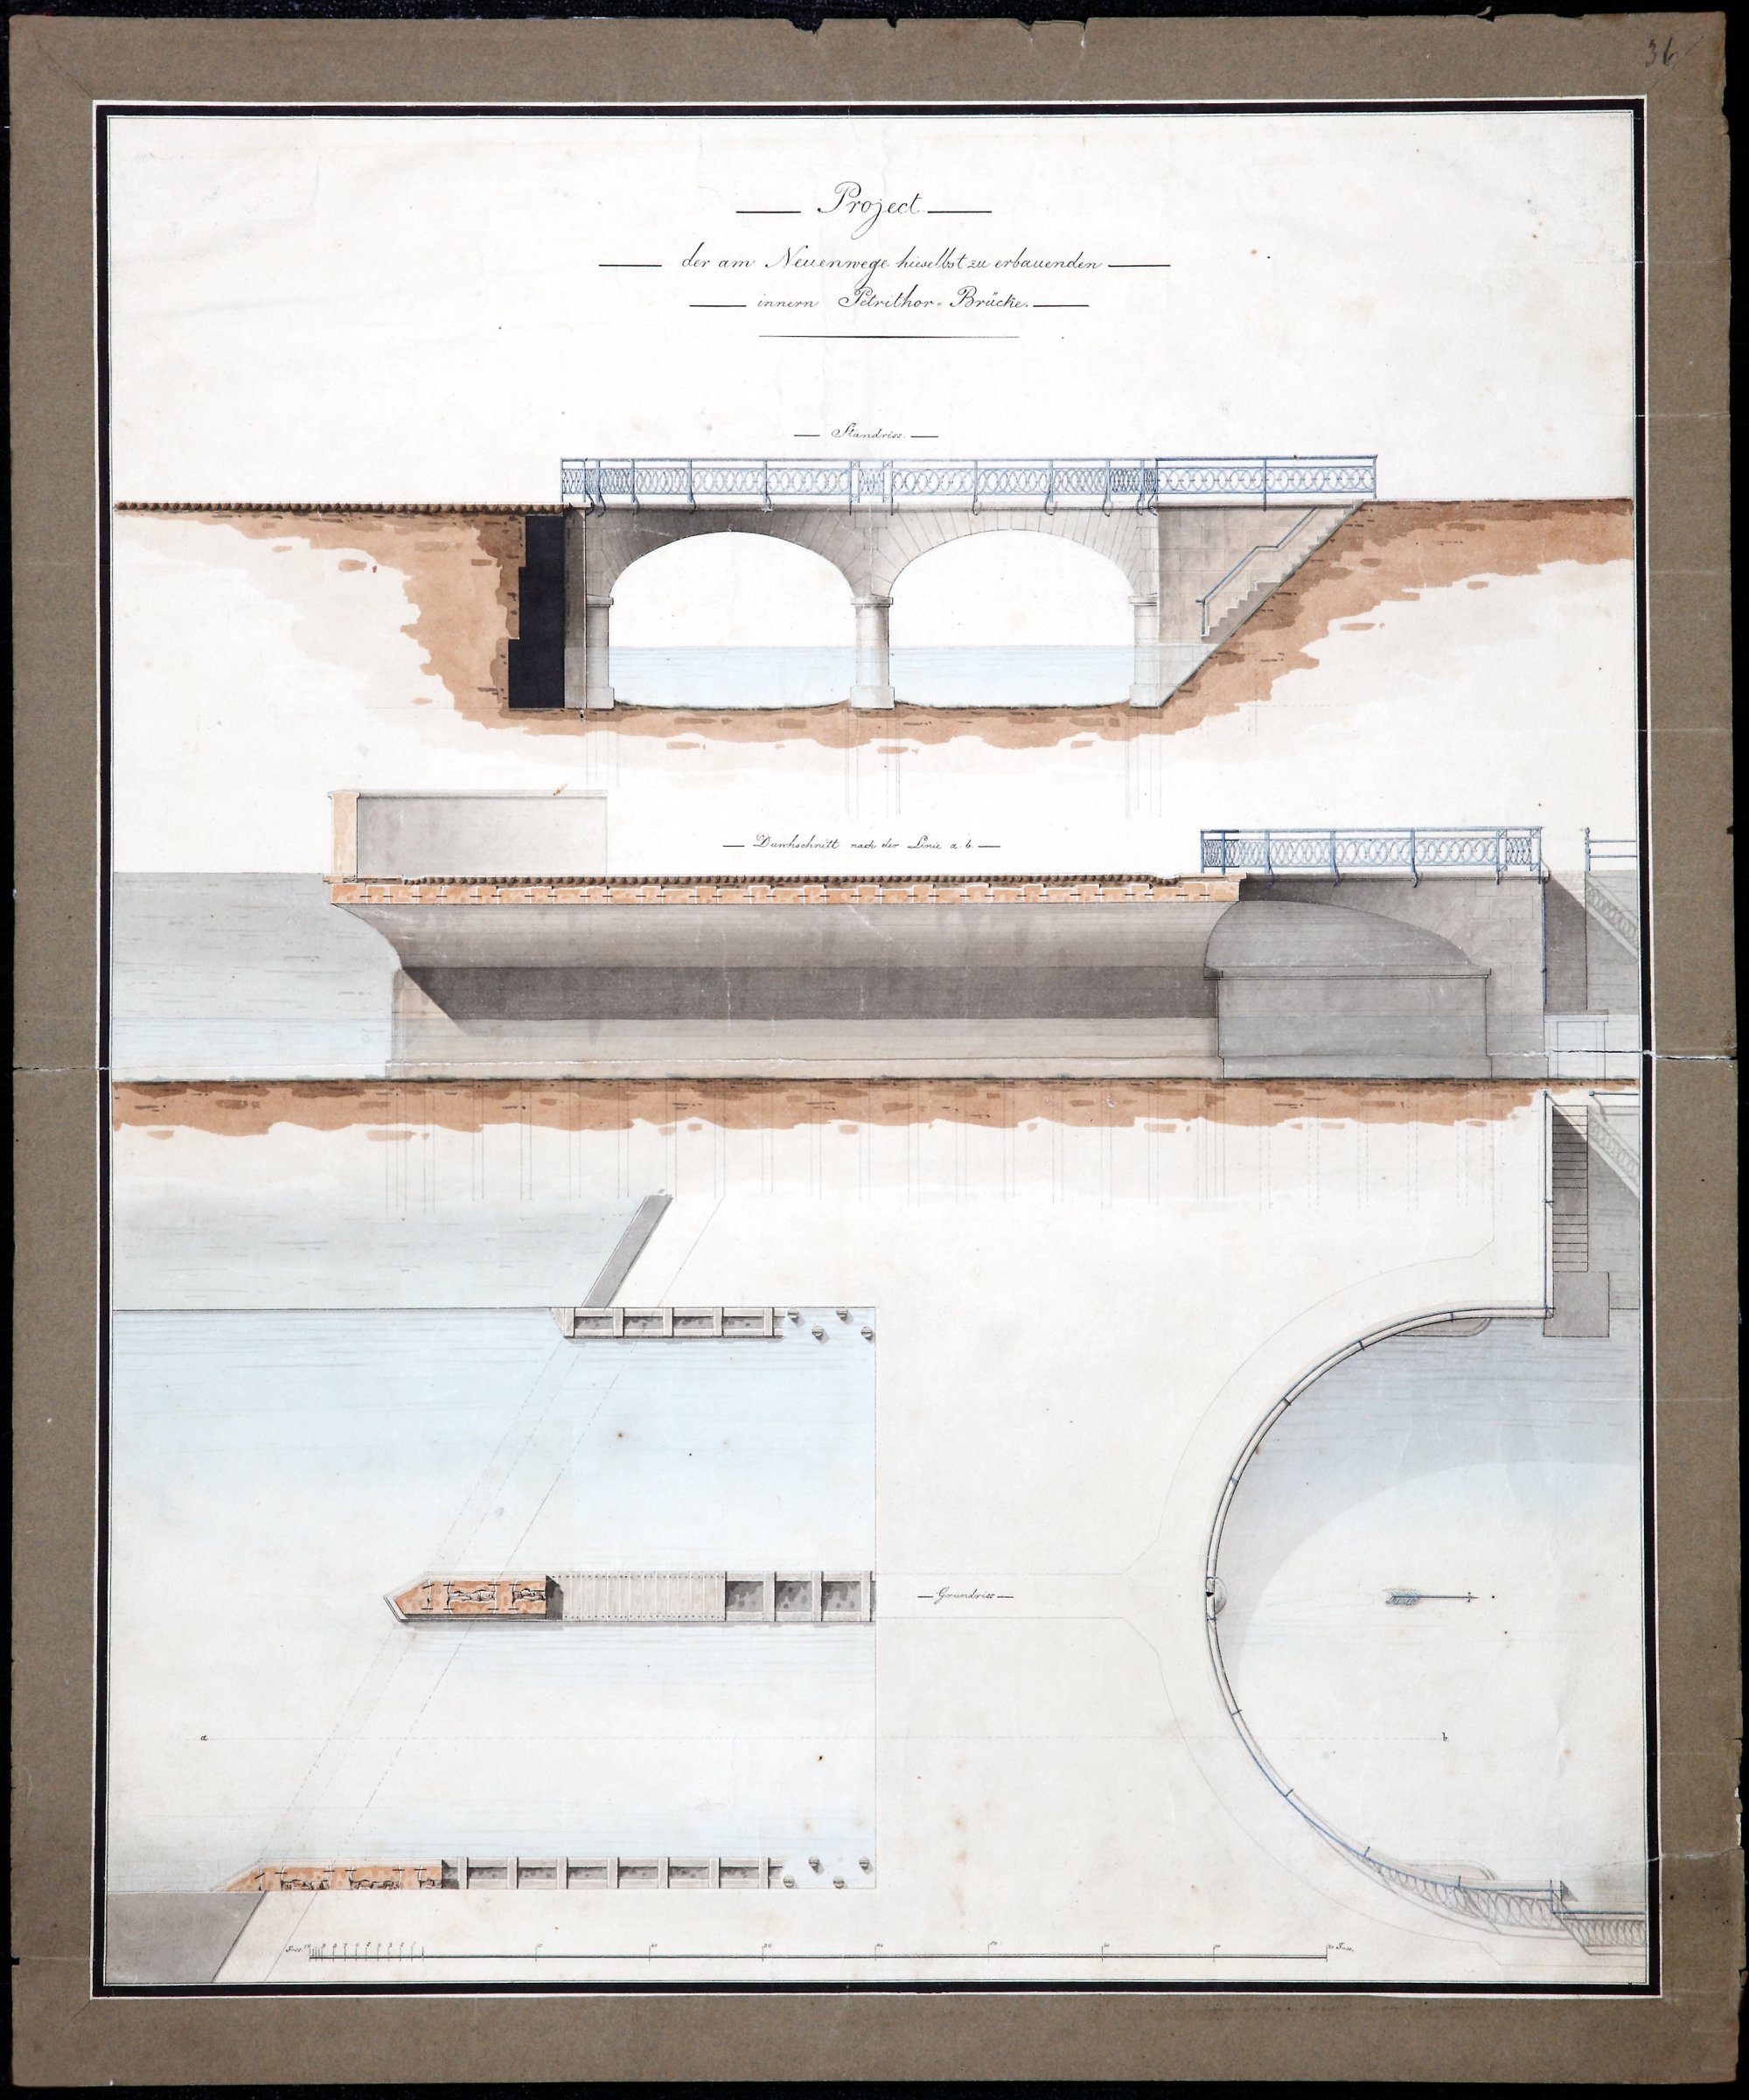 Brücke Neues Petritor, Entwurfszeichnung von Krahe, Ansicht, Längsschnitt und Grundriss, 1819 (Wird bei Klick vergrößert)